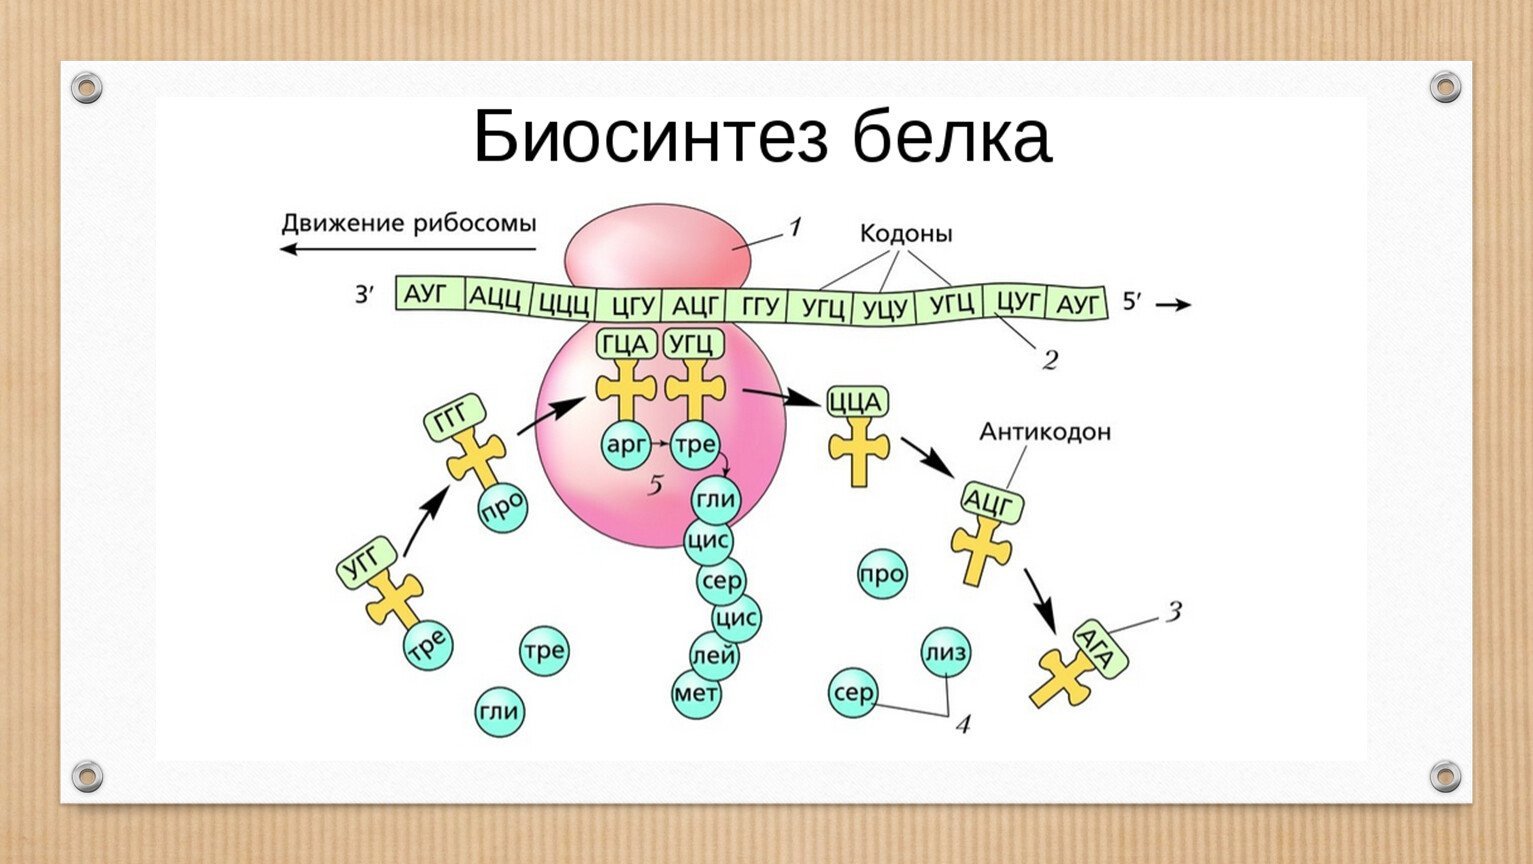 Синтез белка механизмы. Биосинтез белка схема 9 класс биология. Биосинтез белка биология в схемах. Биосинтез белка биология 11 класс.